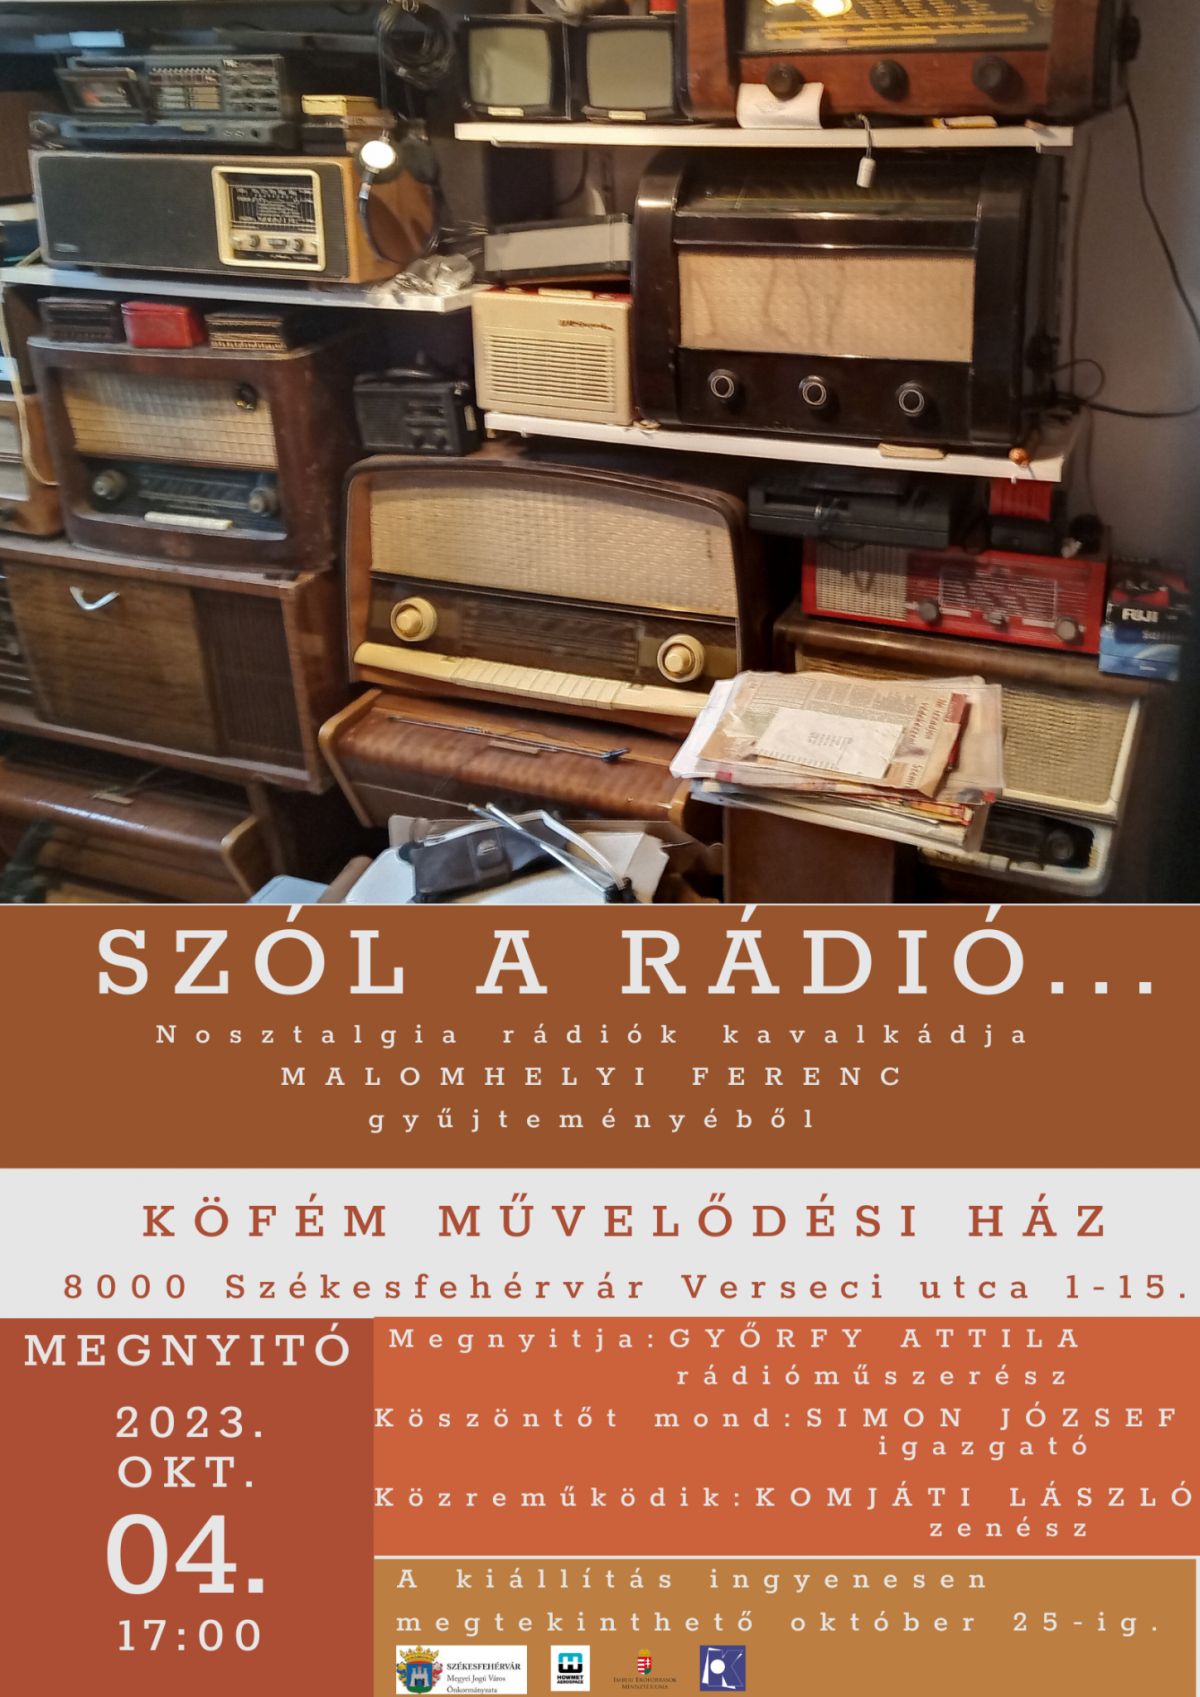 Szól a rádió…! – régi készülékekből nyílik kiállítás a Köfém Művelődési Házban